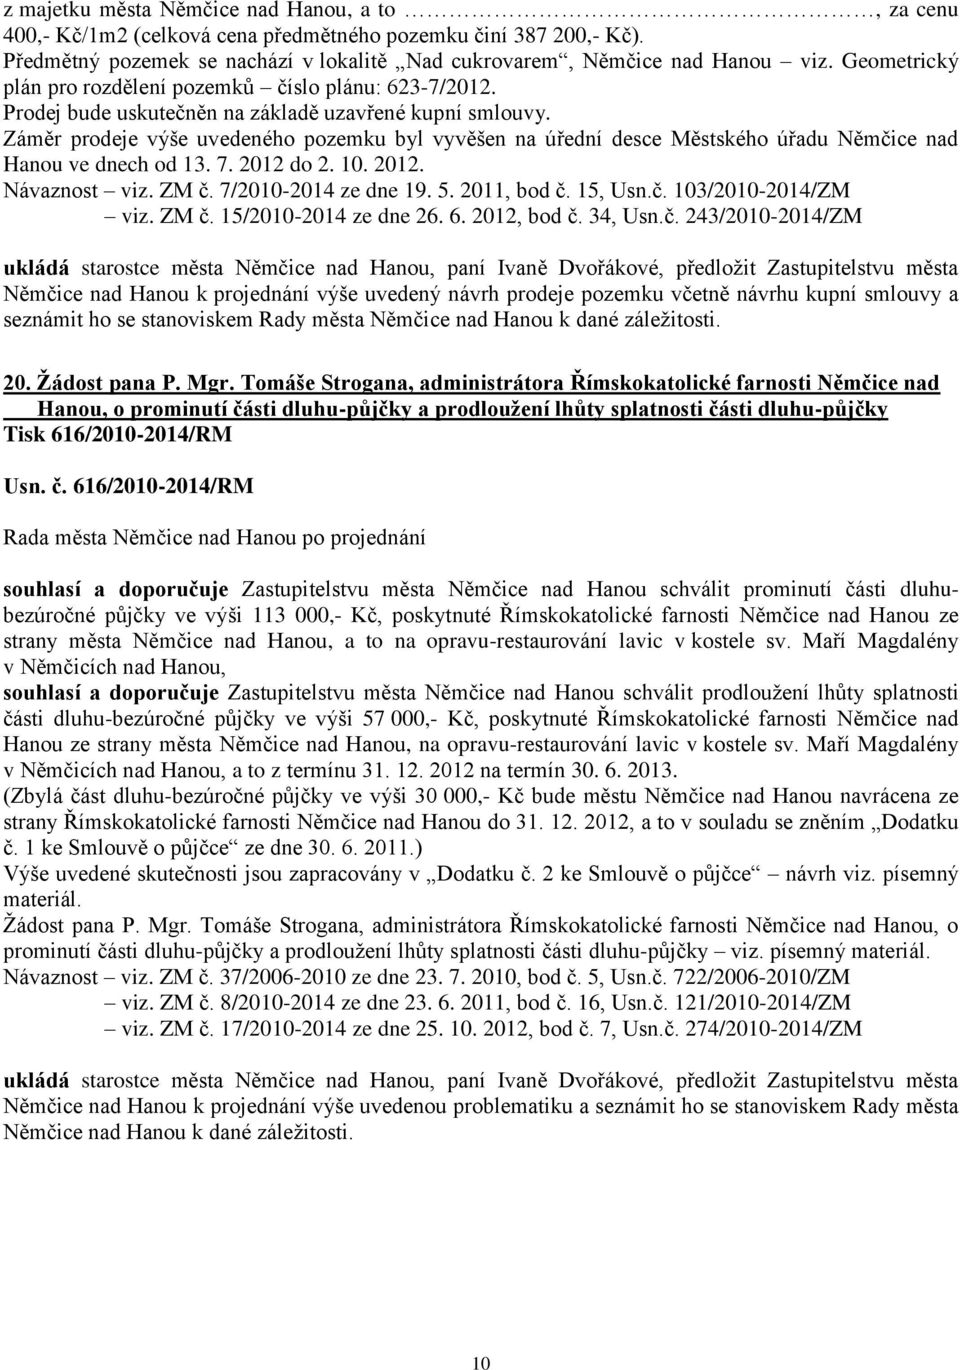 Záměr prodeje výše uvedeného pozemku byl vyvěšen na úřední desce Městského úřadu Němčice nad Hanou ve dnech od 13. 7. 2012 do 2. 10. 2012. Návaznost viz. ZM č. 7/2010-2014 ze dne 19. 5. 2011, bod č.